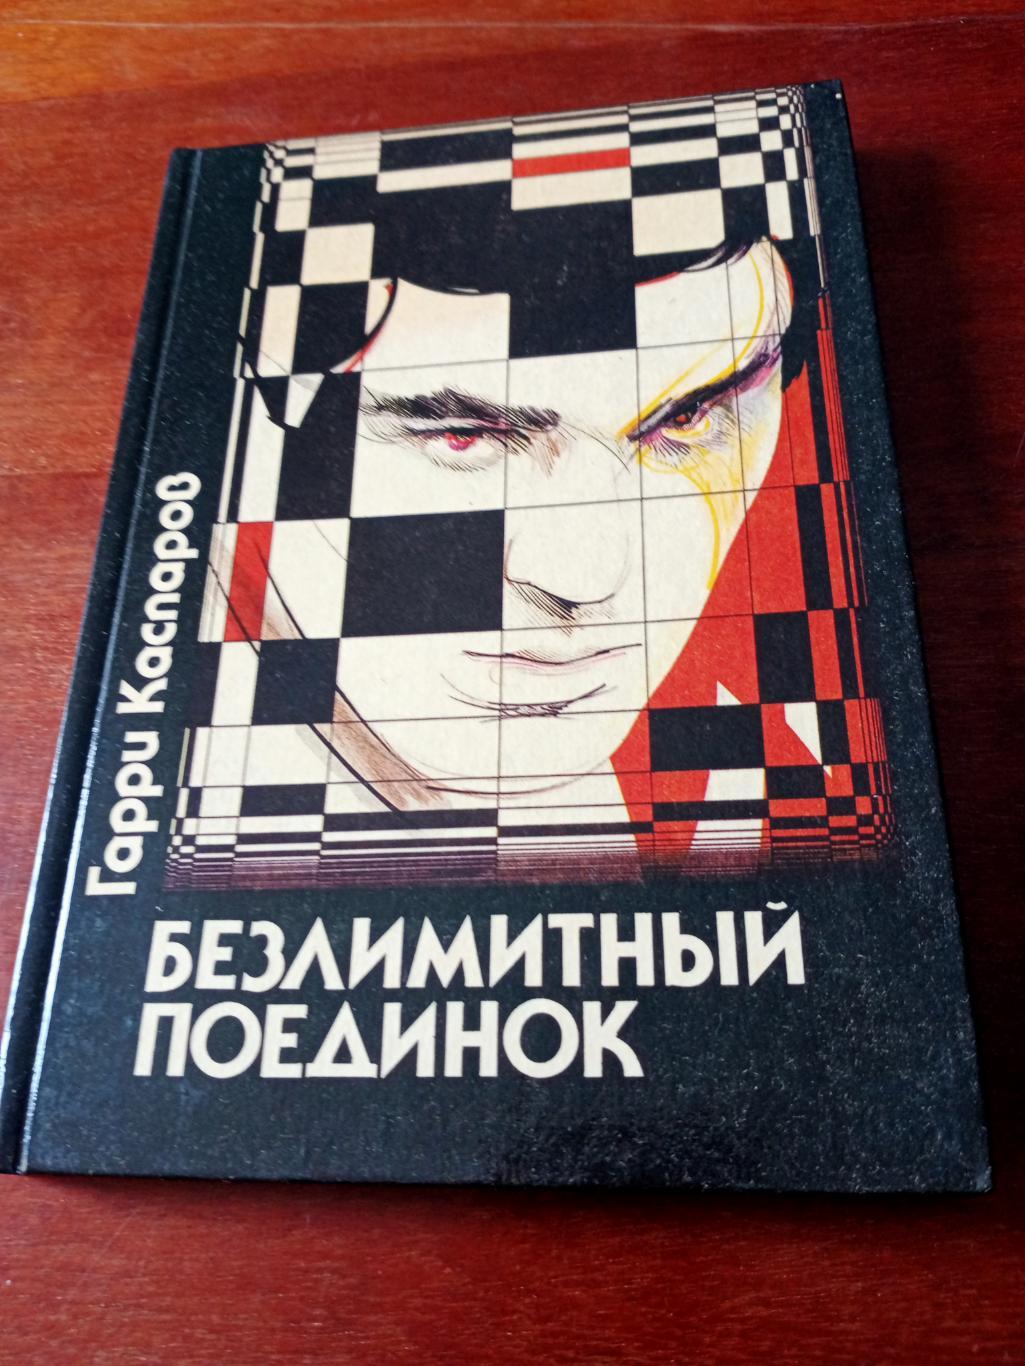 БЕЗ СКИДОК! Г.Каспаров. Безлимитный поединок. Москва, 1990 год